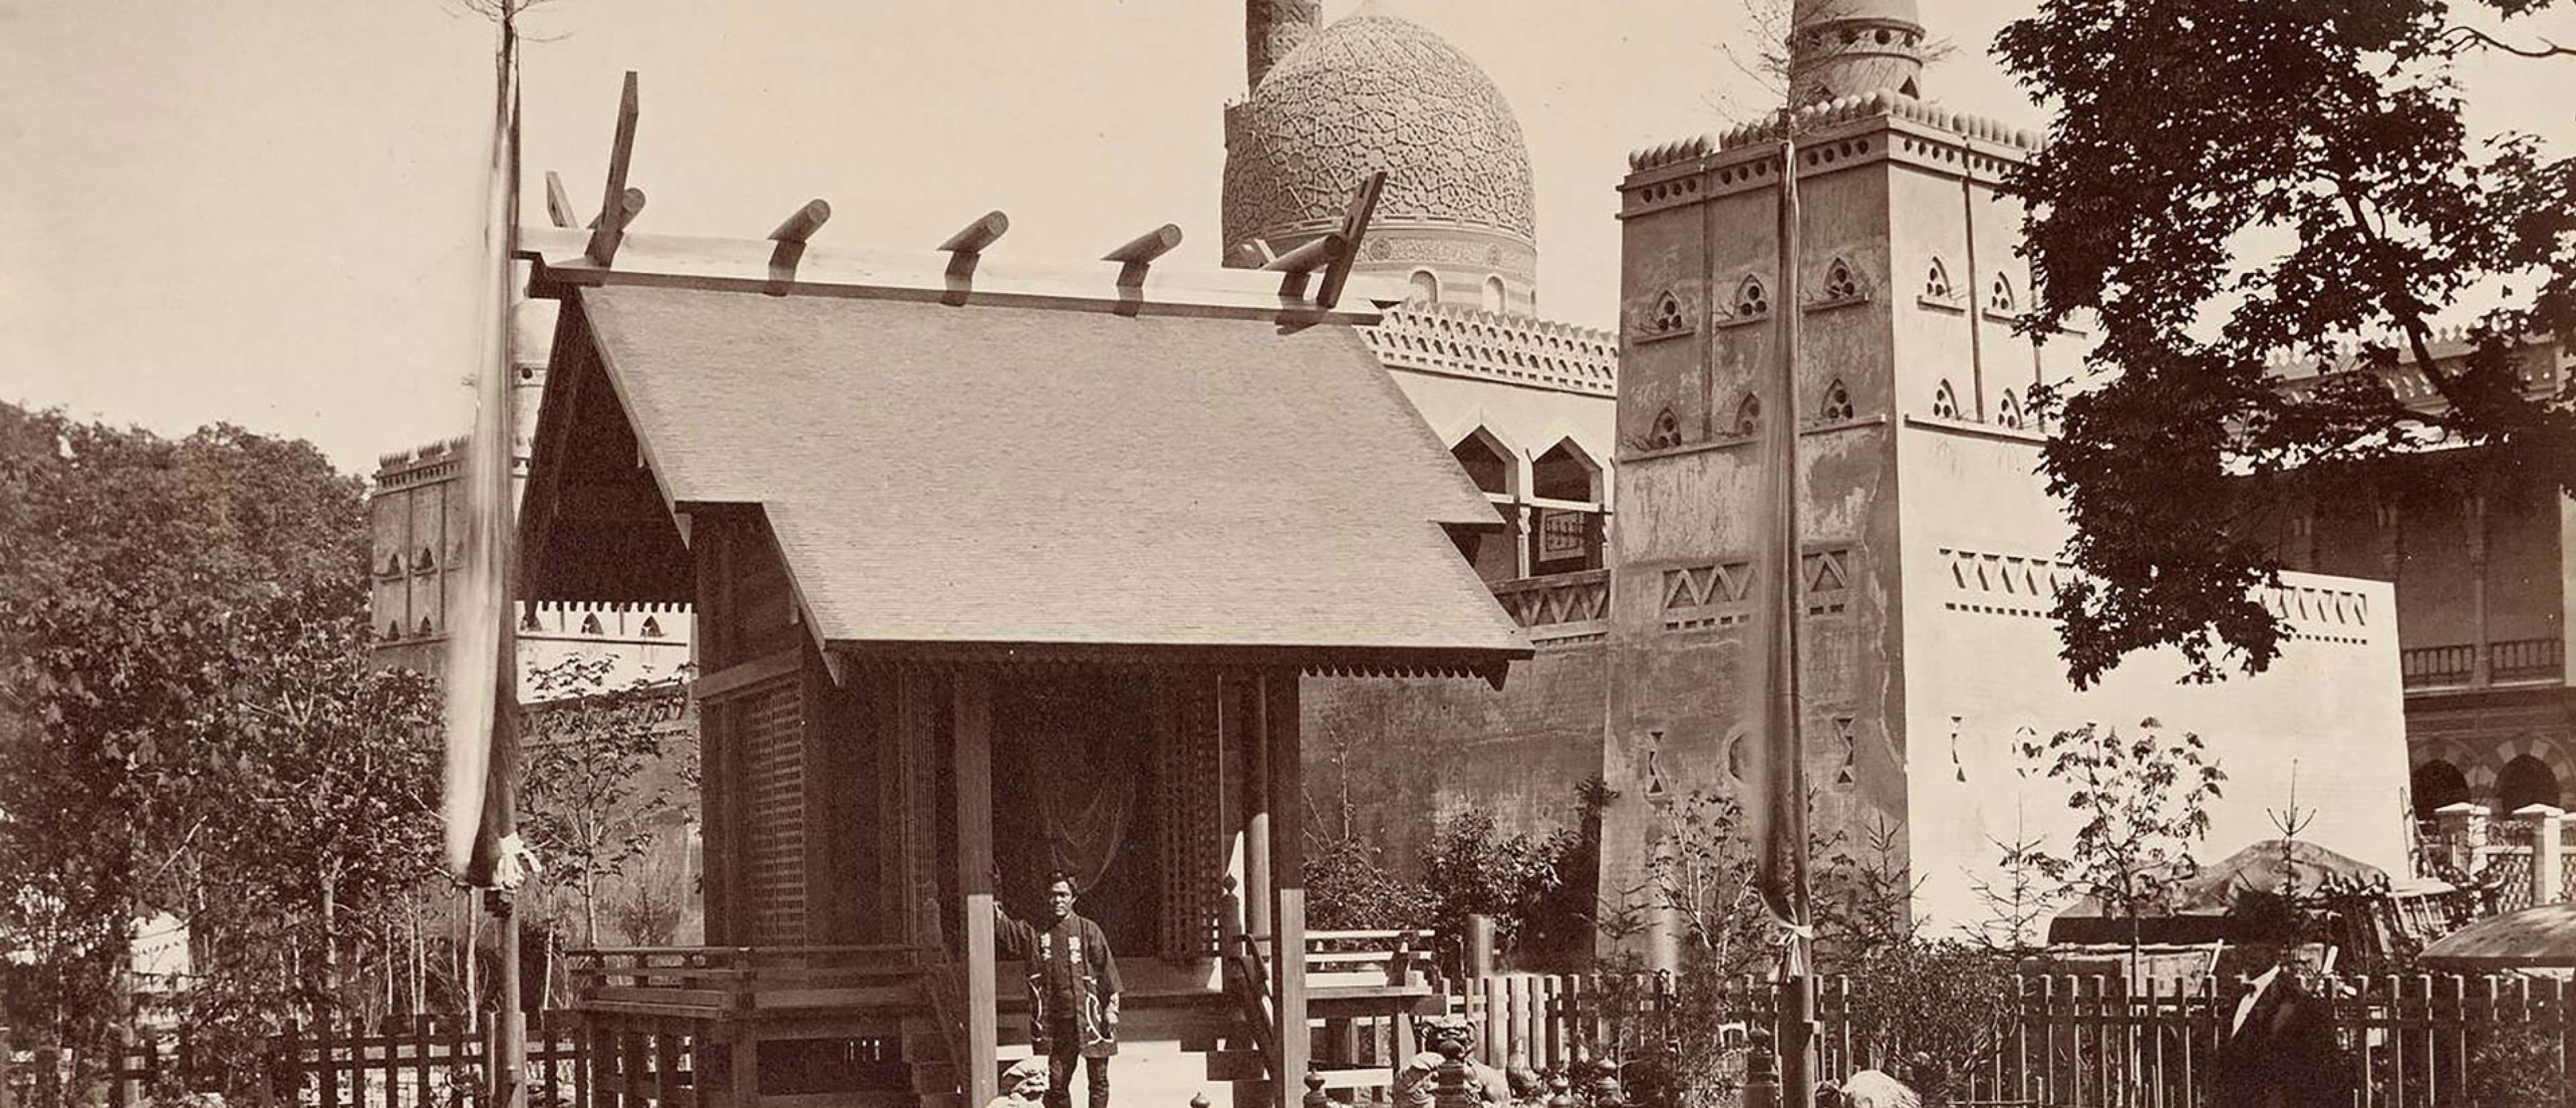 Schwarzweiß Fotografie, darauf zu sehen eine Moschee und ein japanisches Haus